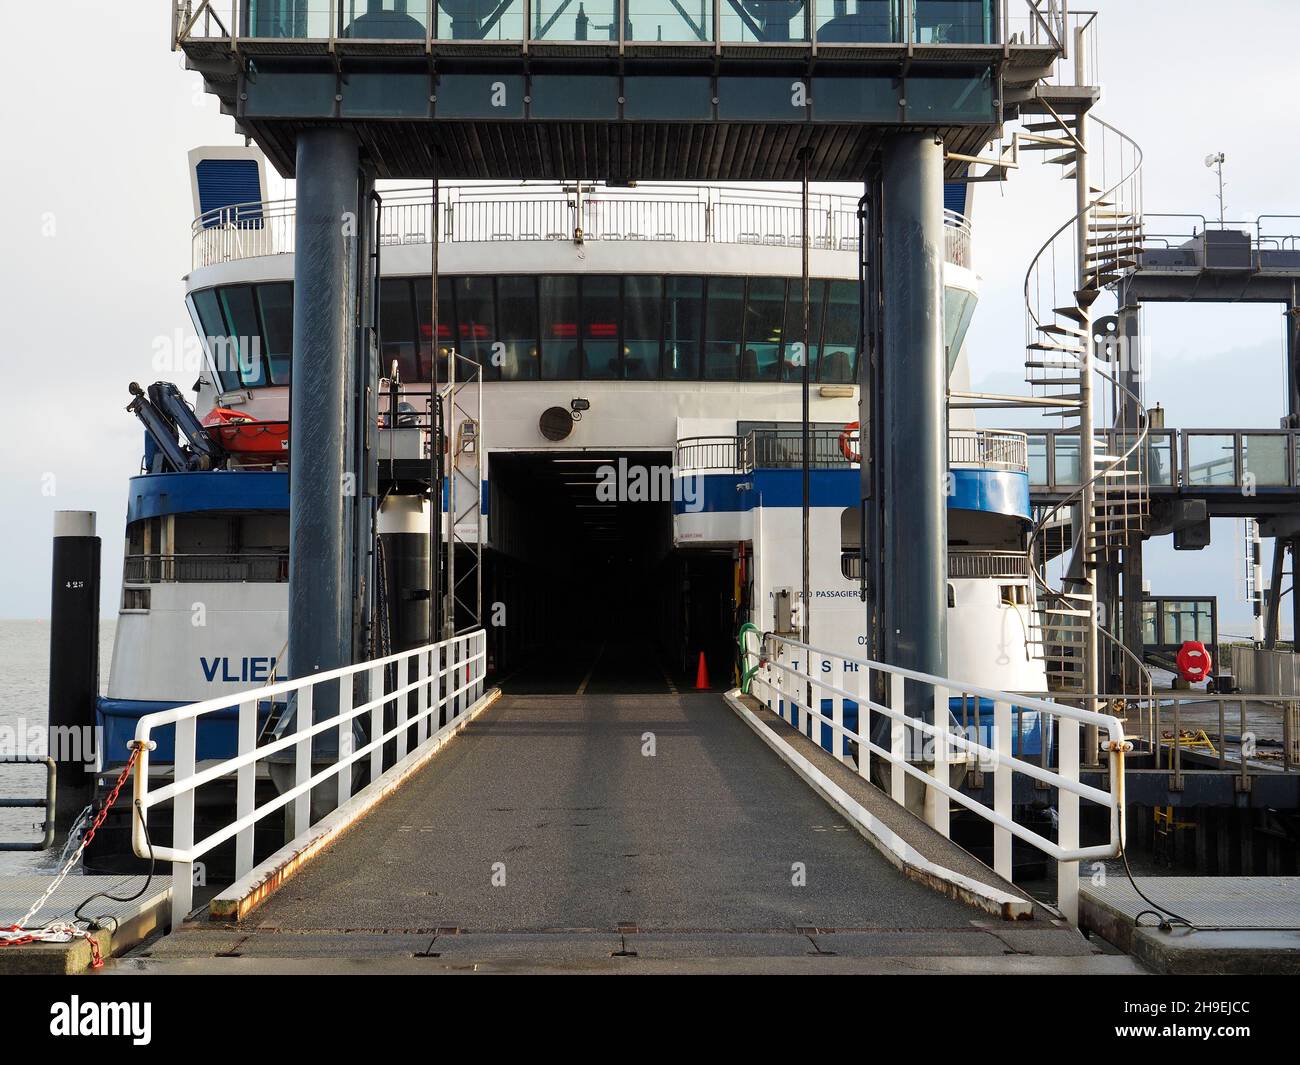 La rampe d'accès au ferry de l'île de Vlieland à Harlingen, Frise, pays-Bas.Le voyage au-dessus de la mer peu profonde de Wadden prend environ 90 minutes. Banque D'Images